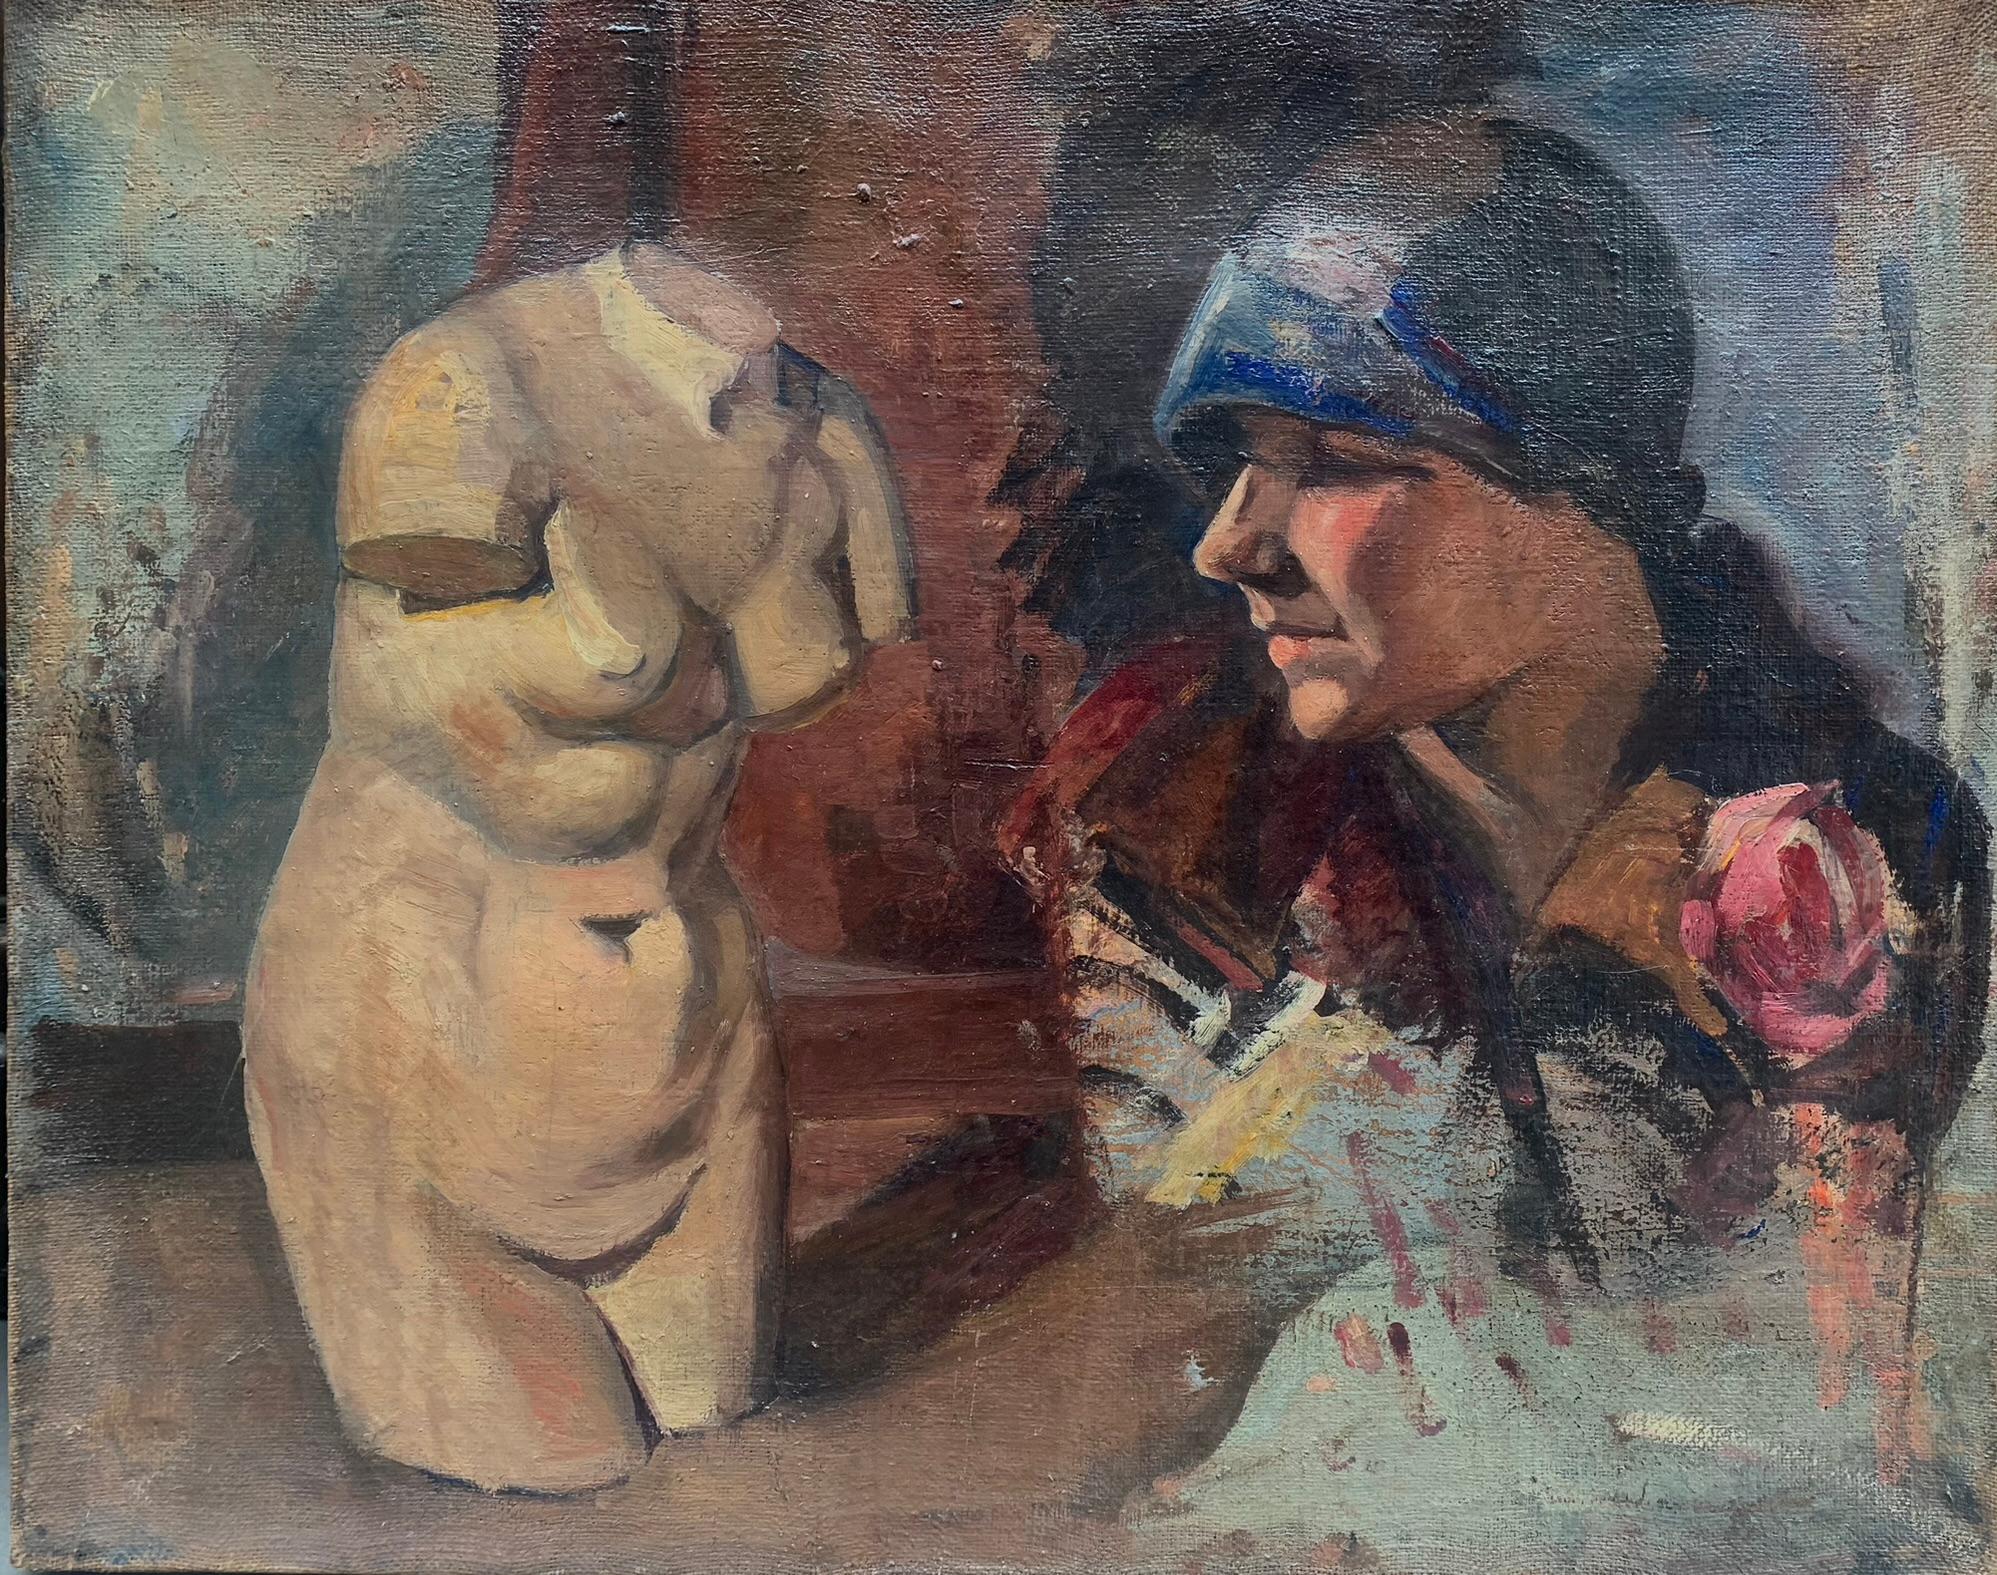 Weiblicher Torso und Porträt aus den 1920er Jahren. Doppelte Skizze auf Leinwand. – Painting von Unknown